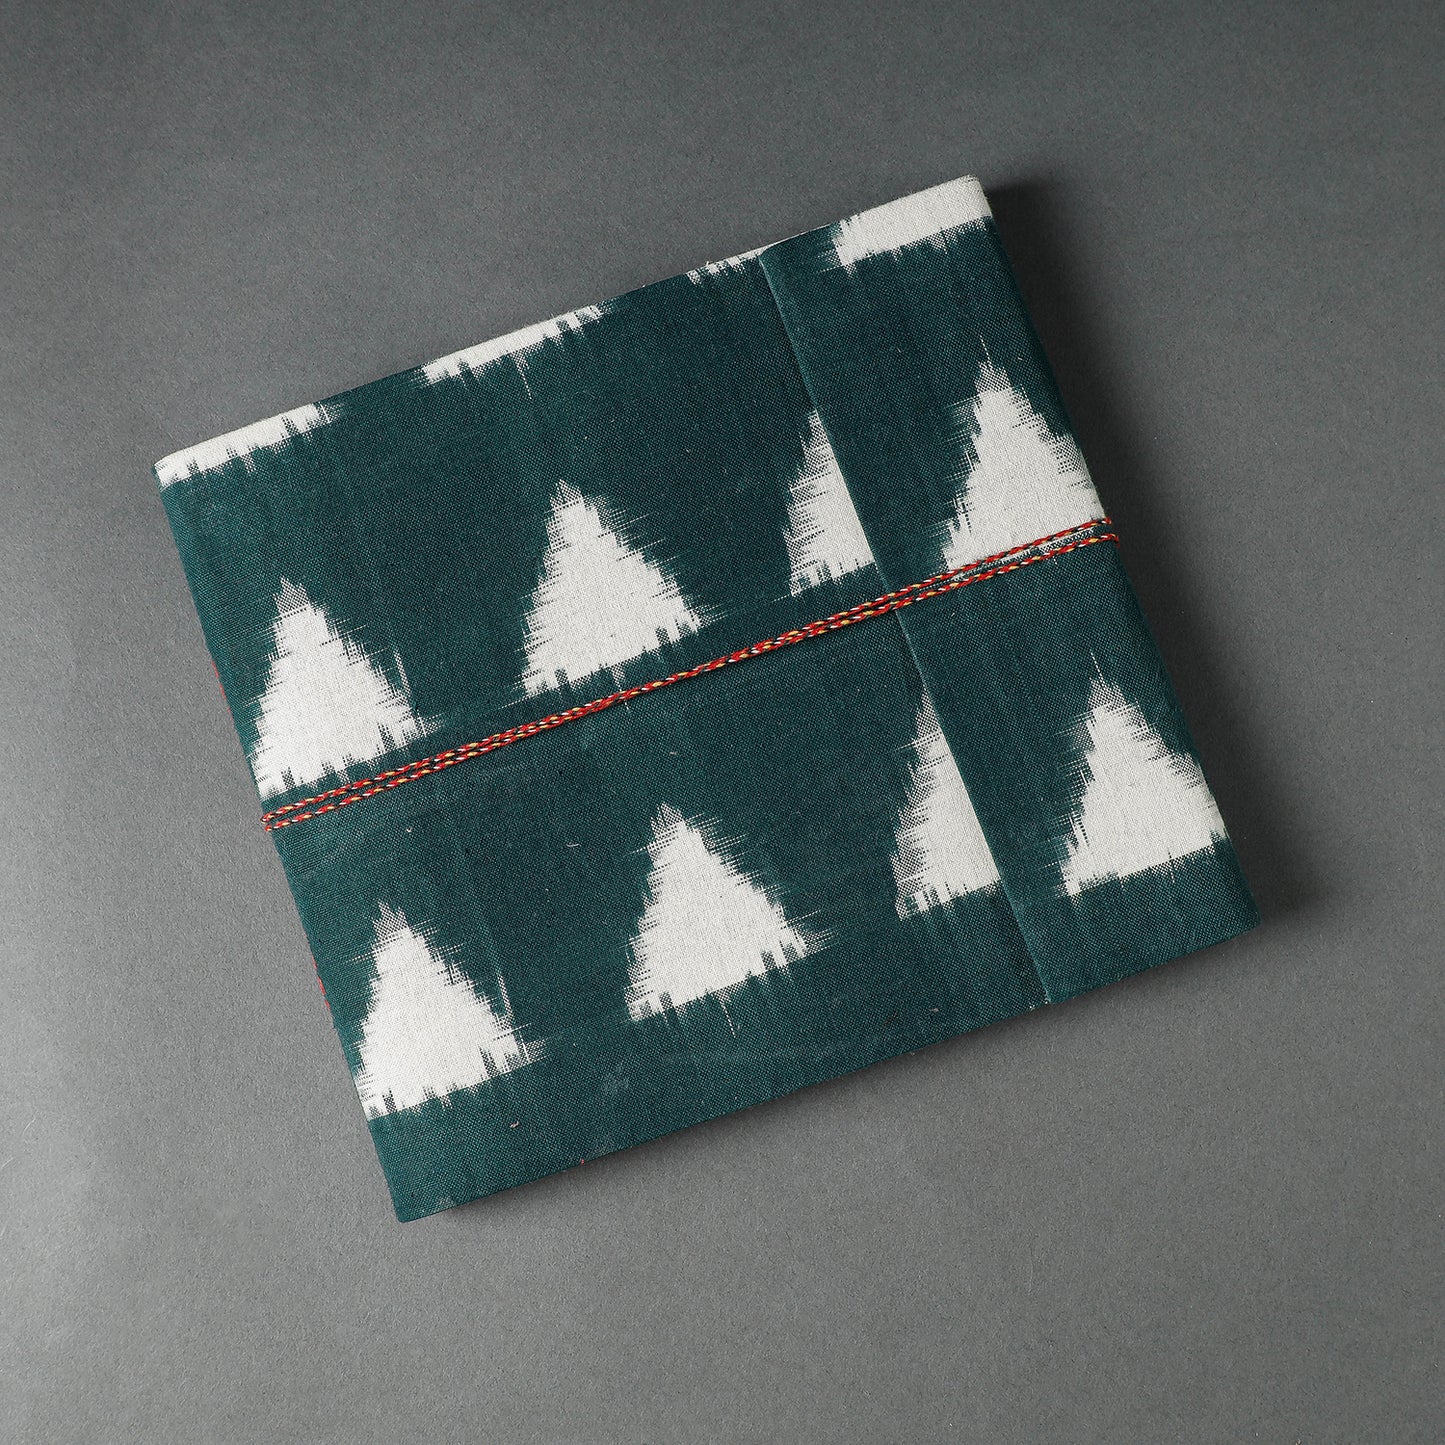 Sambalpuri Ikat Fabric Cover Handmade Paper Photo Album (9 x 10 in)